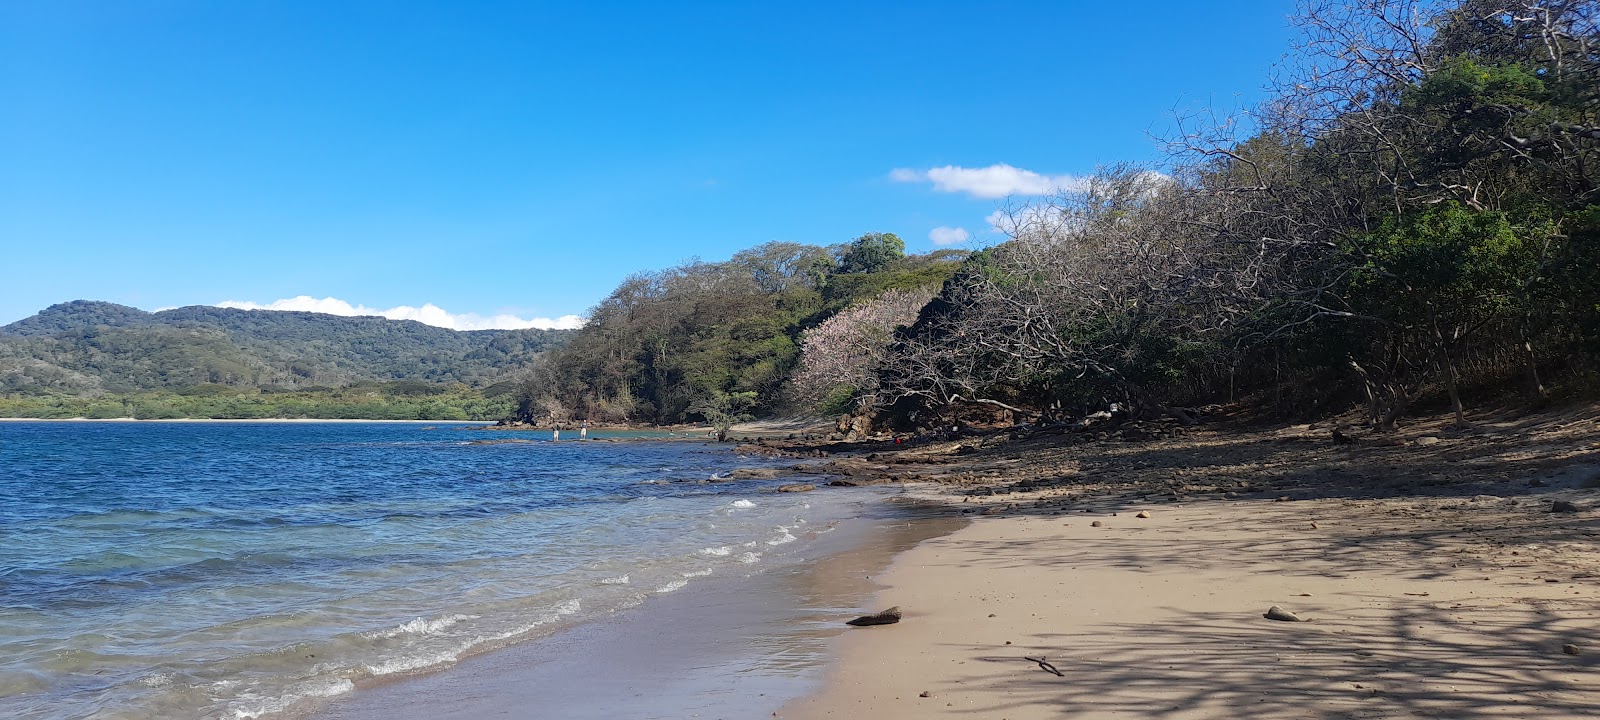 Playa Escondida'in fotoğrafı taşlı kum yüzey ile